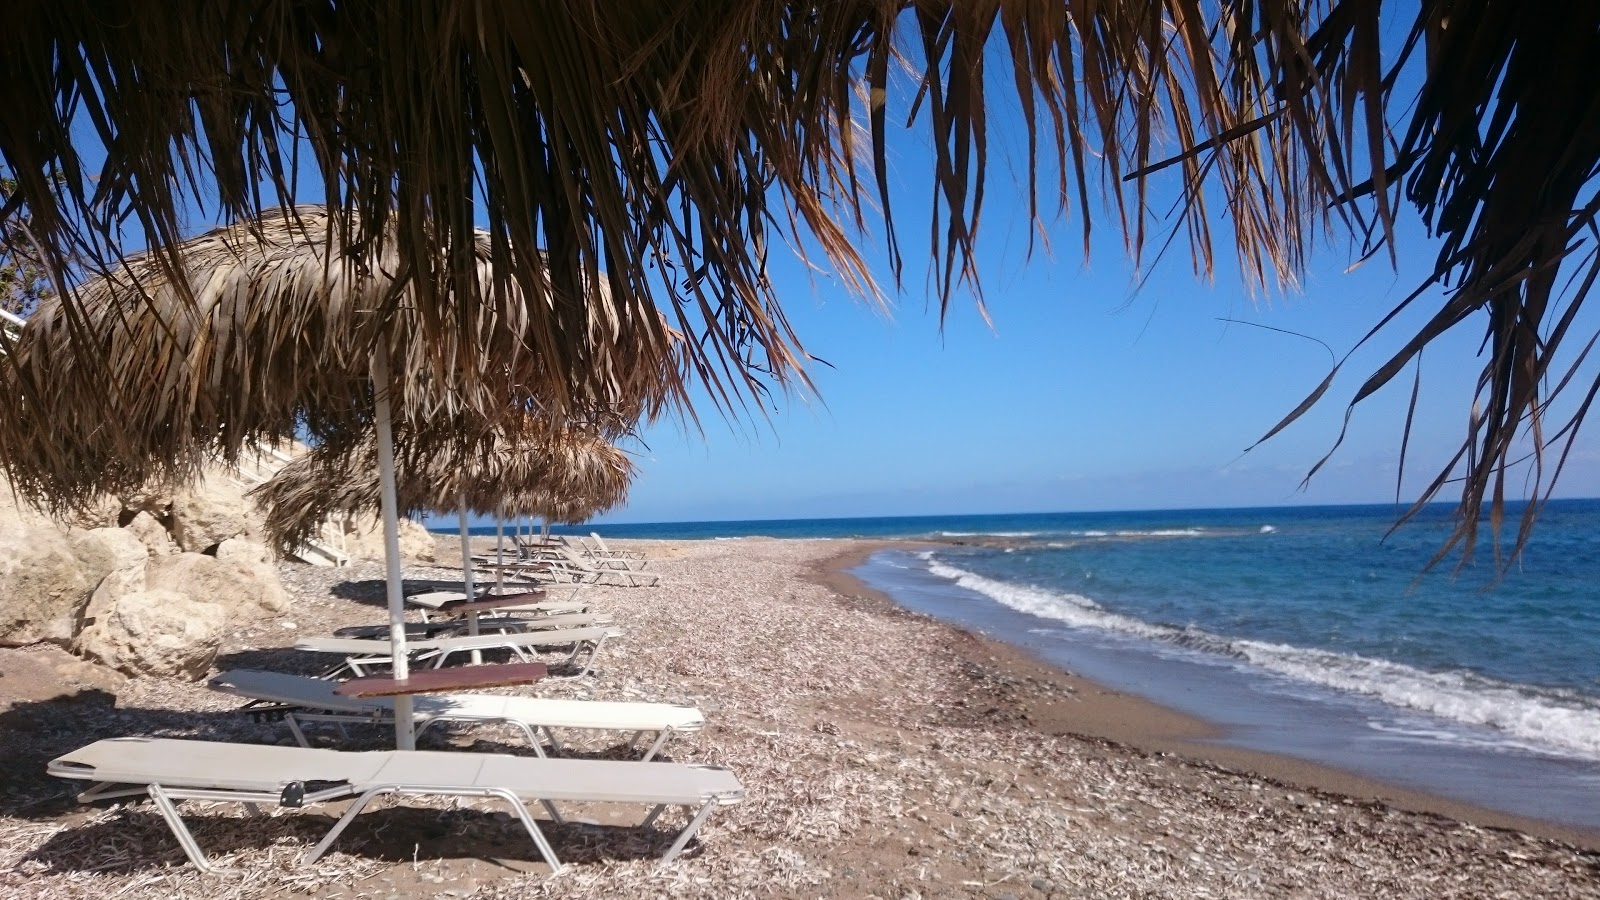 Photo de Bonamare beach - endroit populaire parmi les connaisseurs de la détente